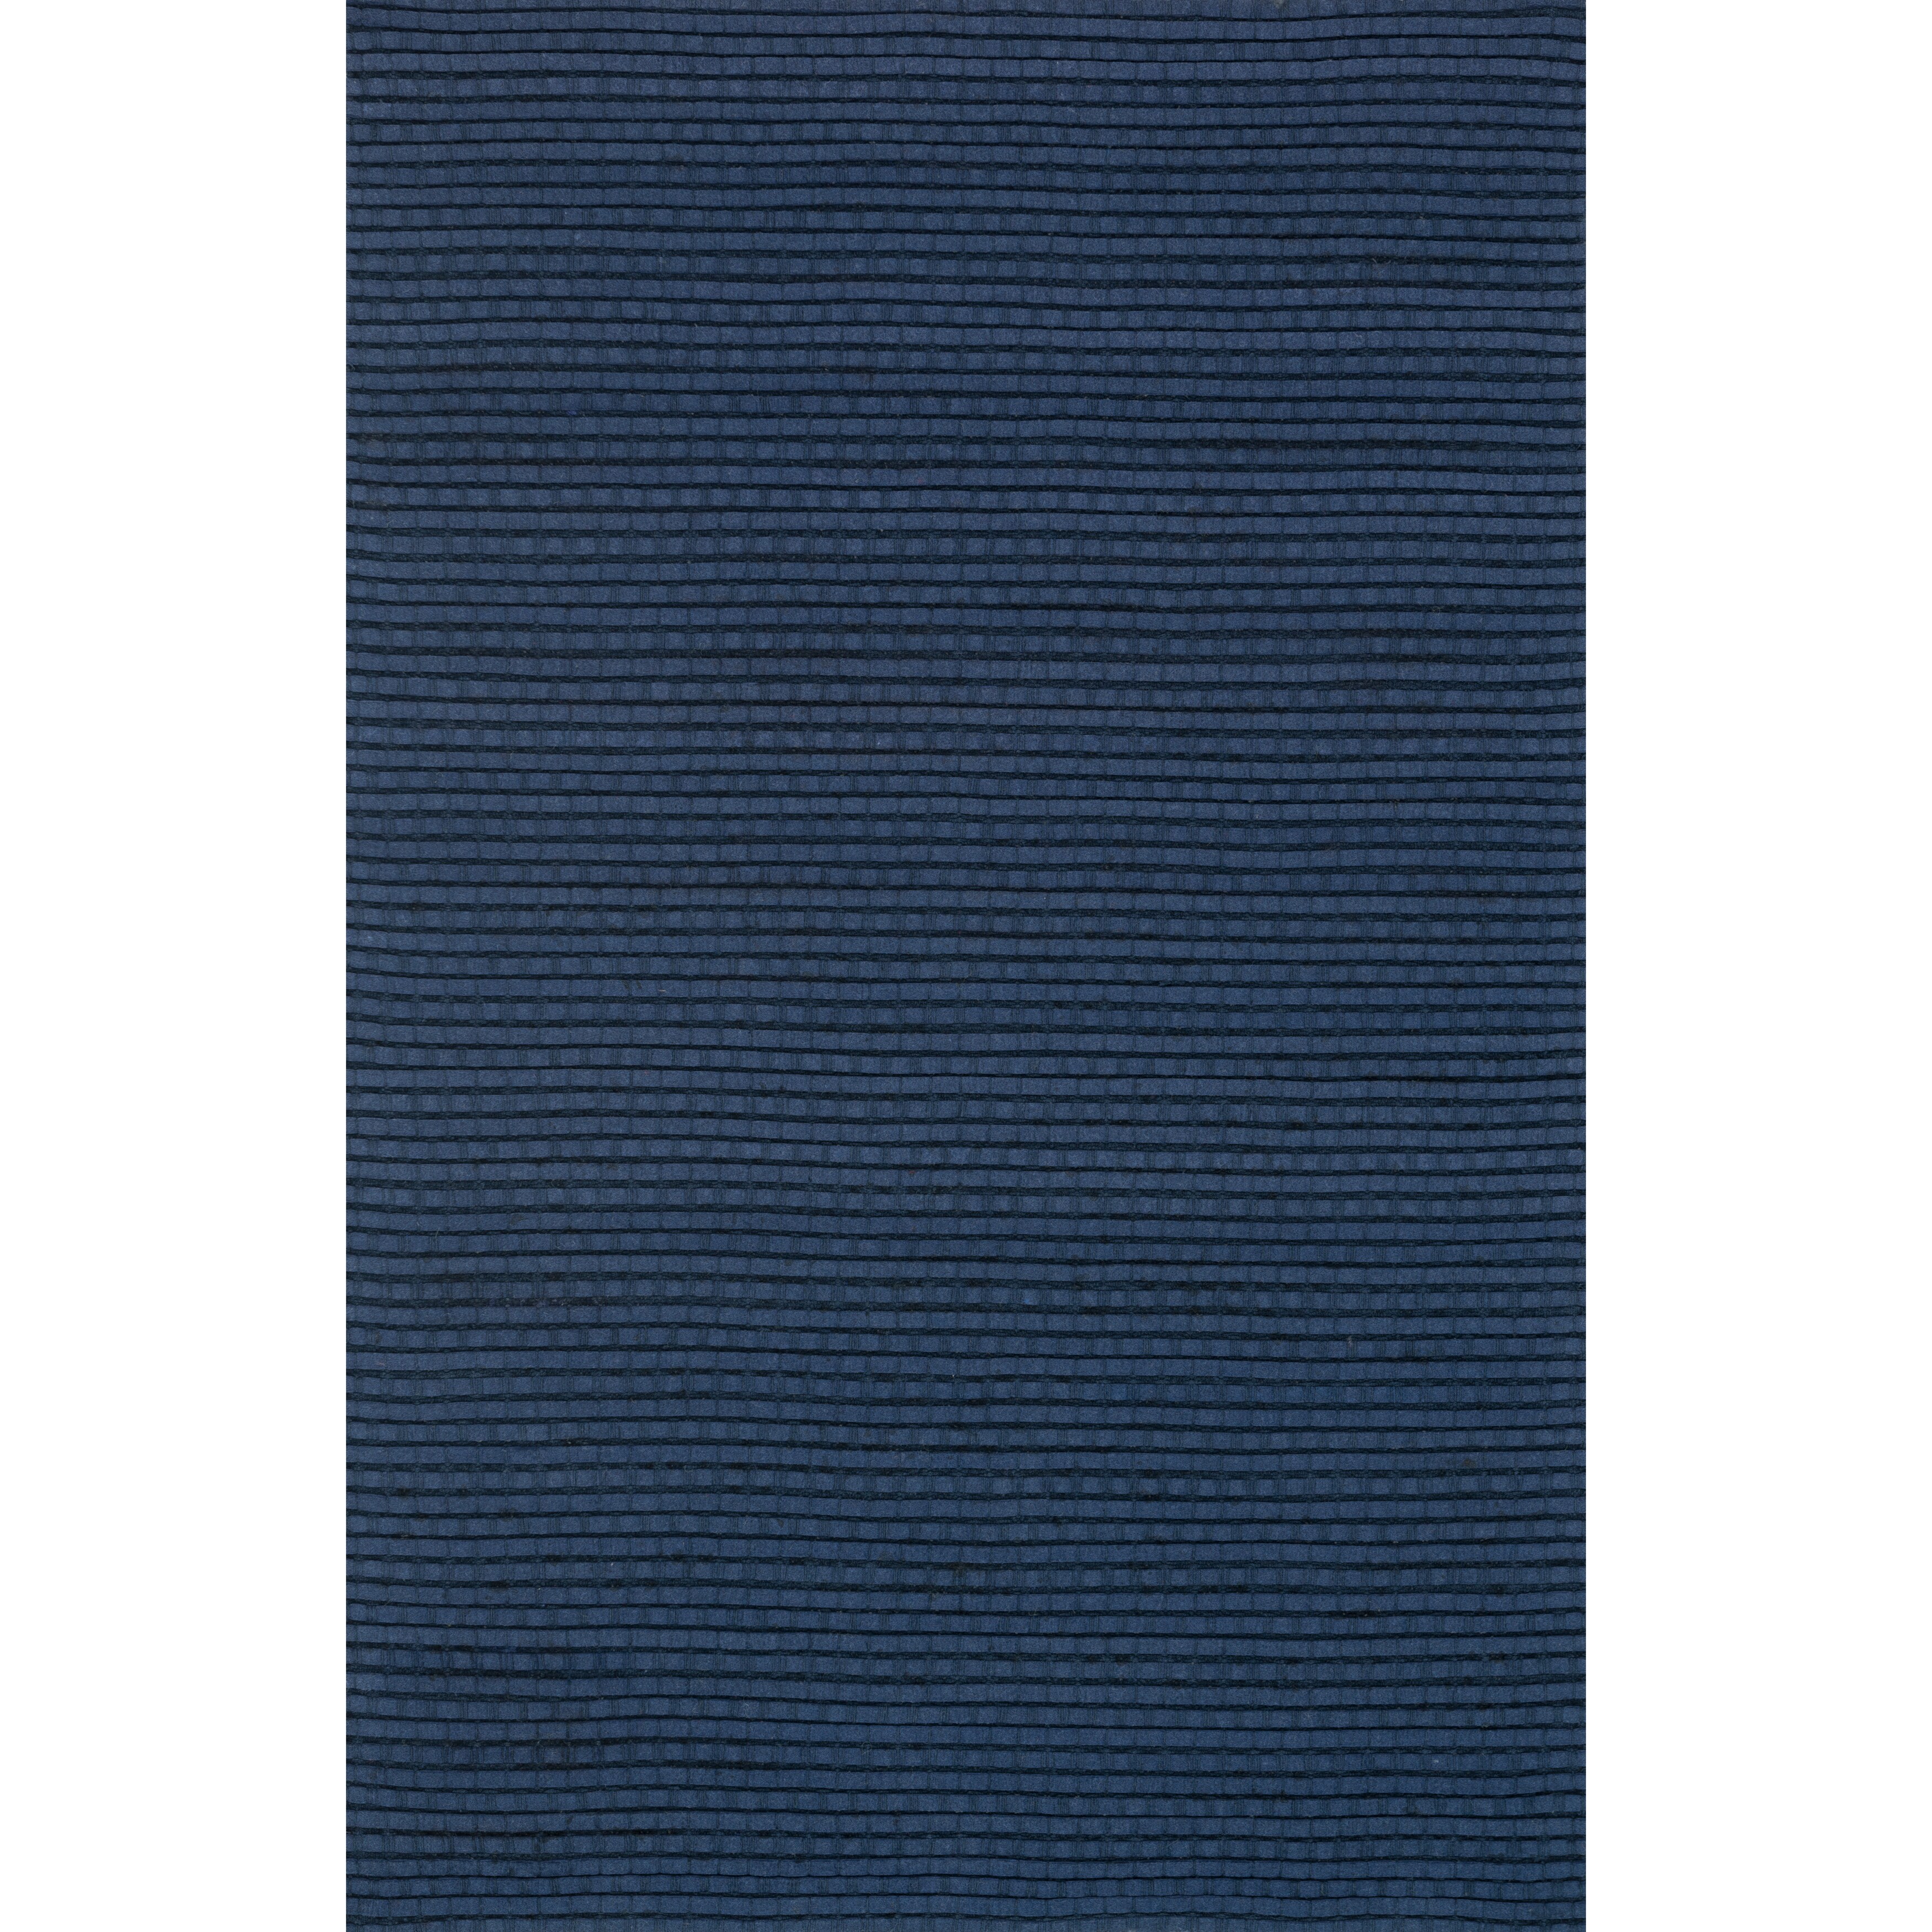 Hand Woven Rhythm Blue Wool Rug (76 X 96)